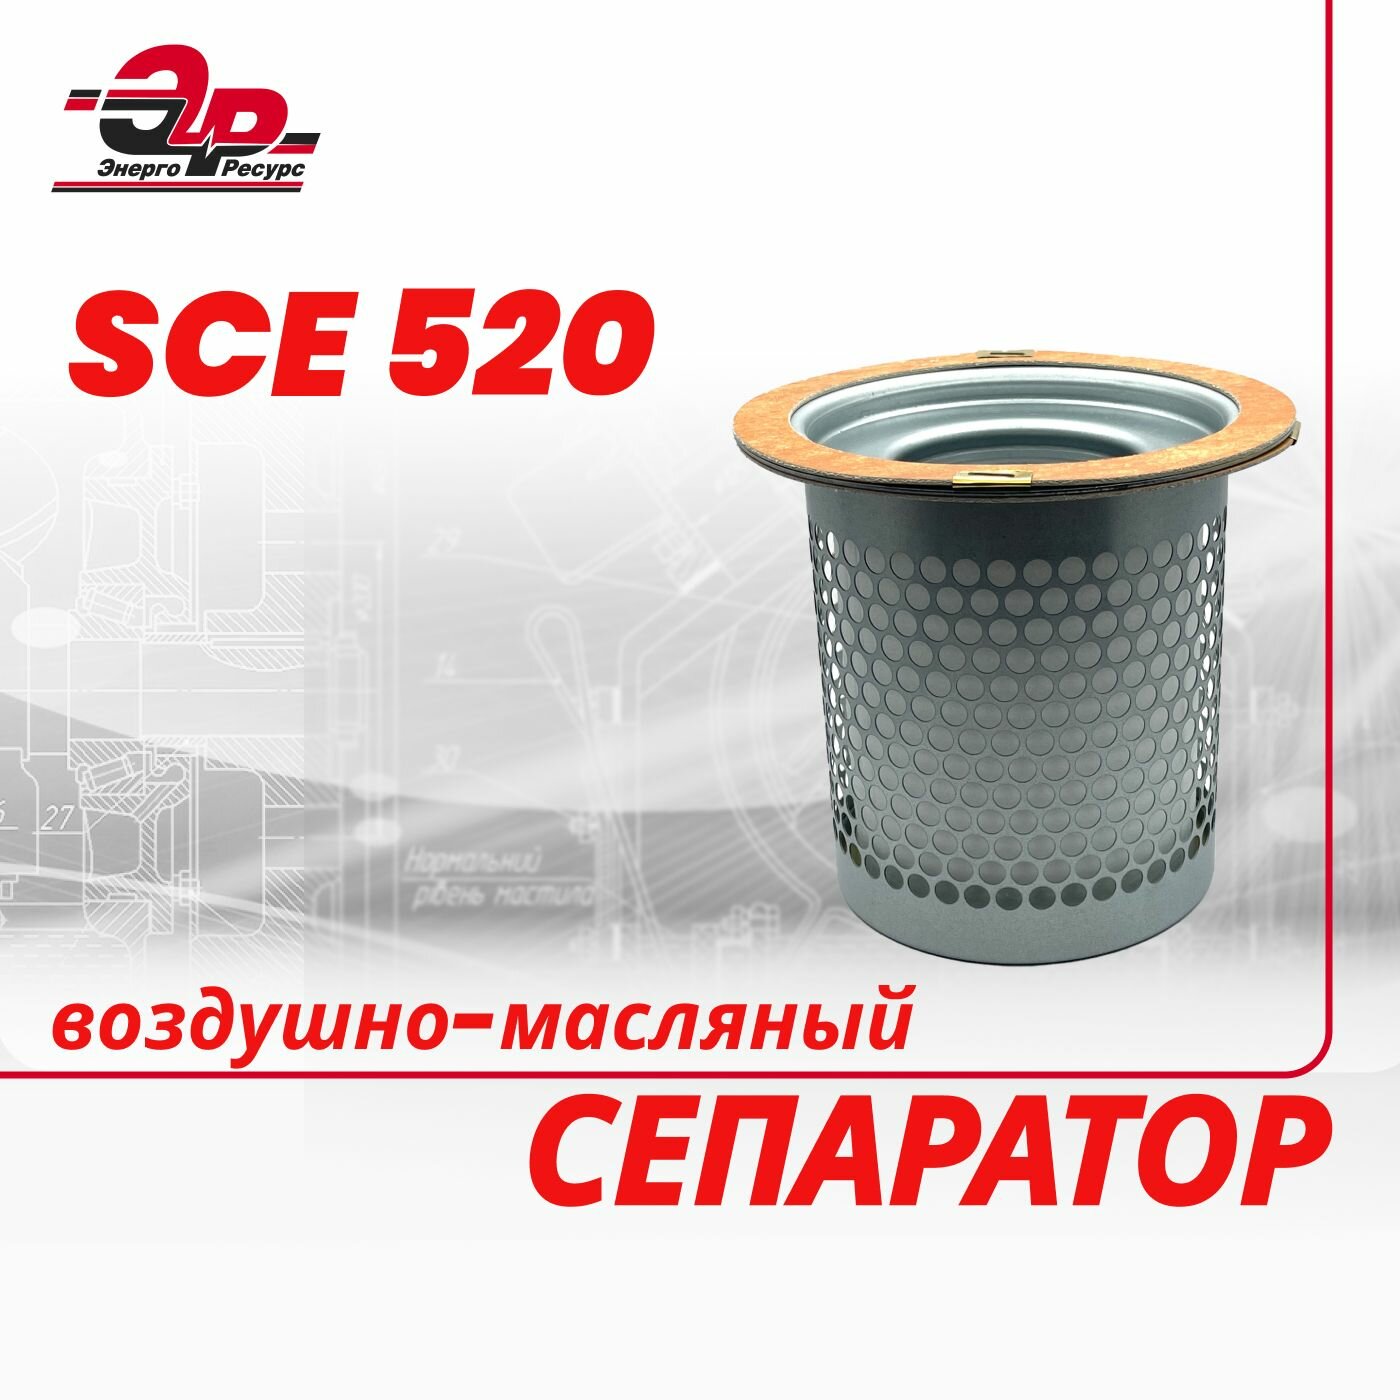 Воздушно-масляный сепаратор SCE 520 для винтового компрессора